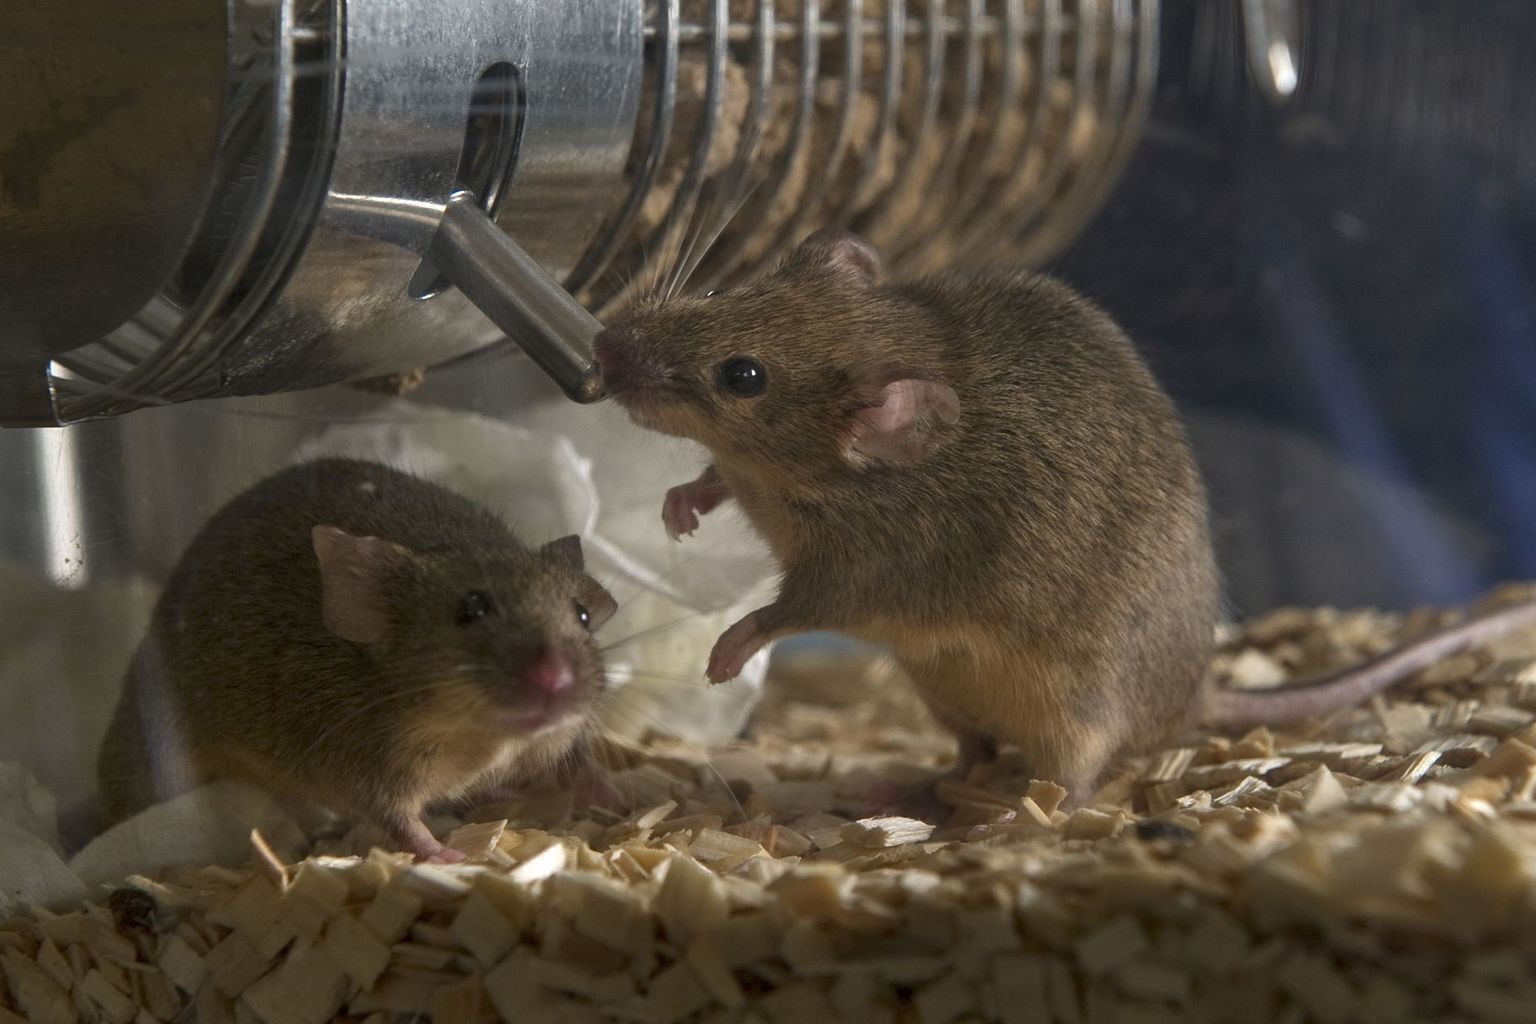 Maus trinkt in Versuchstierbox